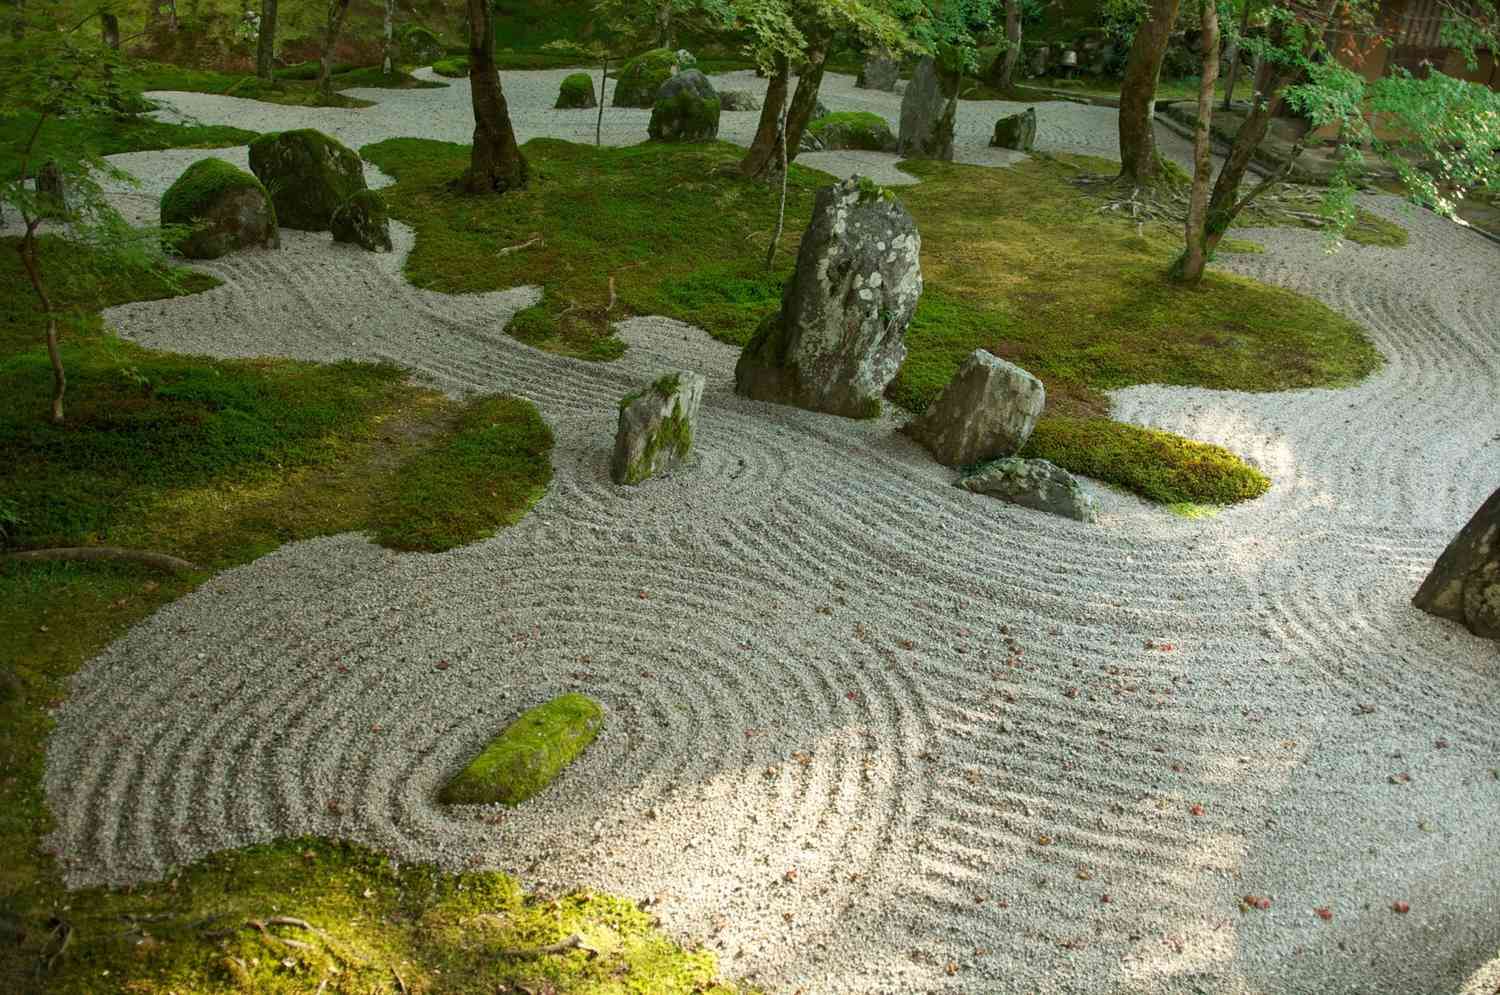 Diseño de jardines japoneses: Qué incluir y qué evitar